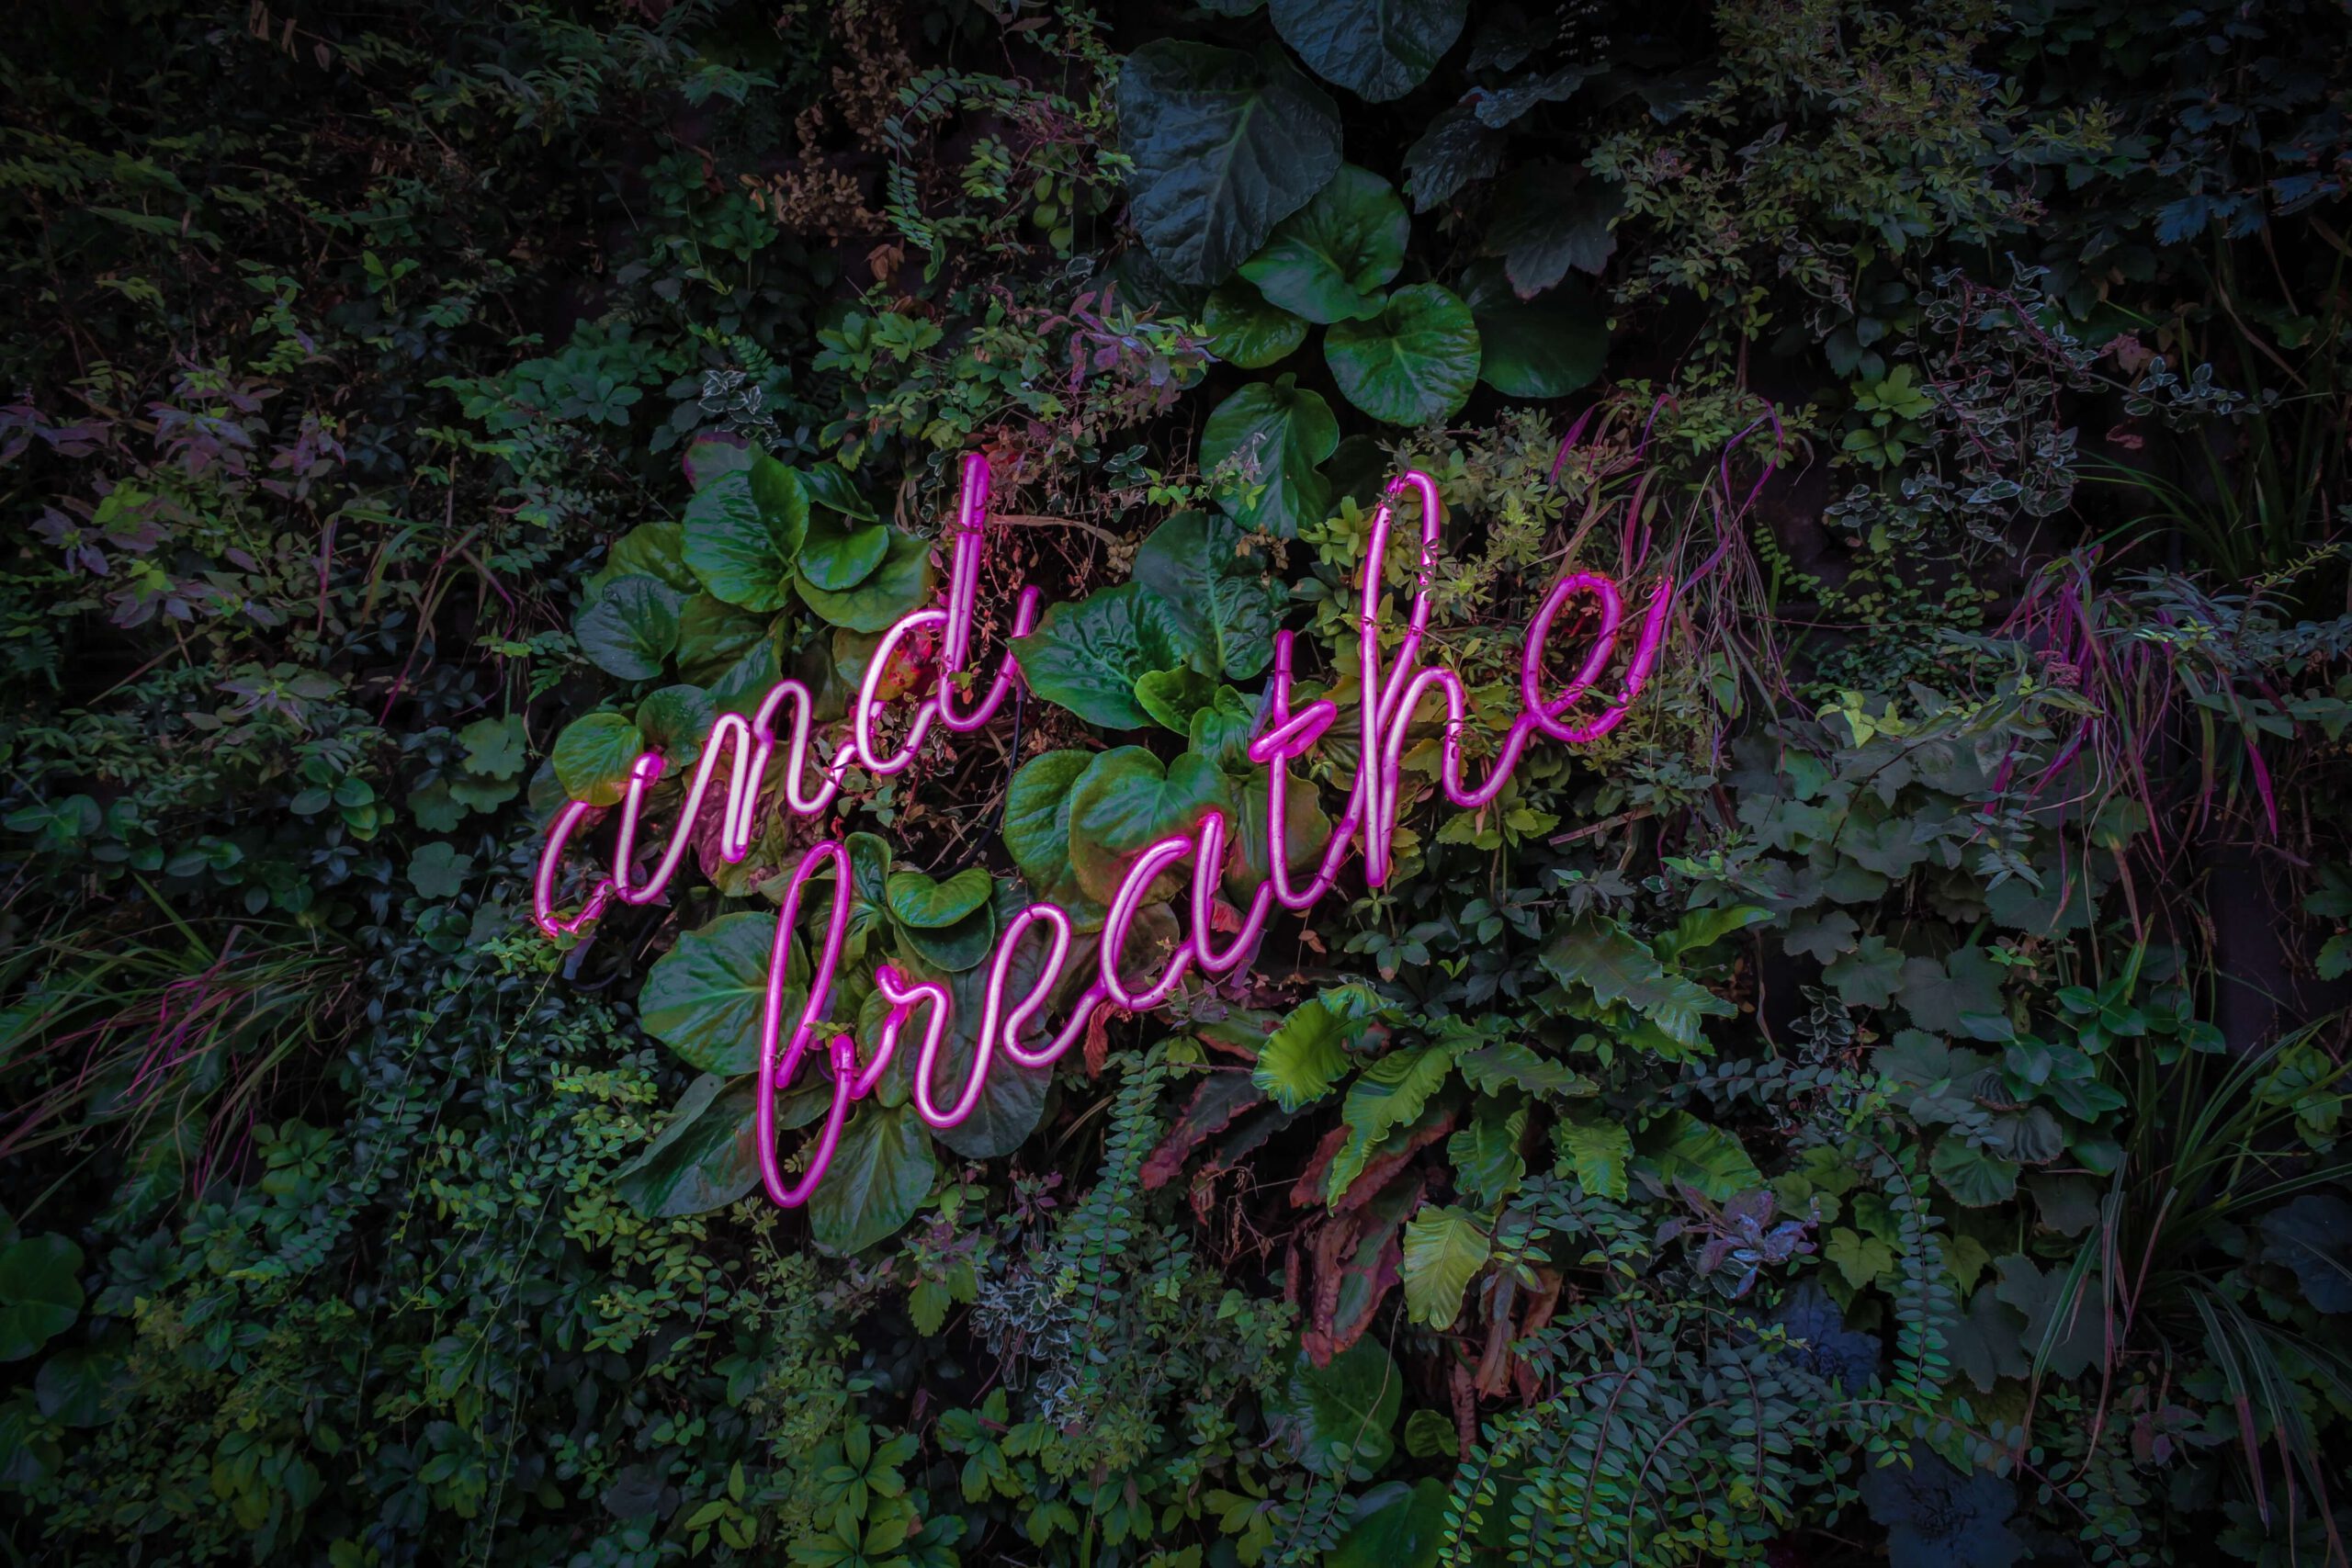 Kuvassa teksti "and breathe" kasvien keskellä.